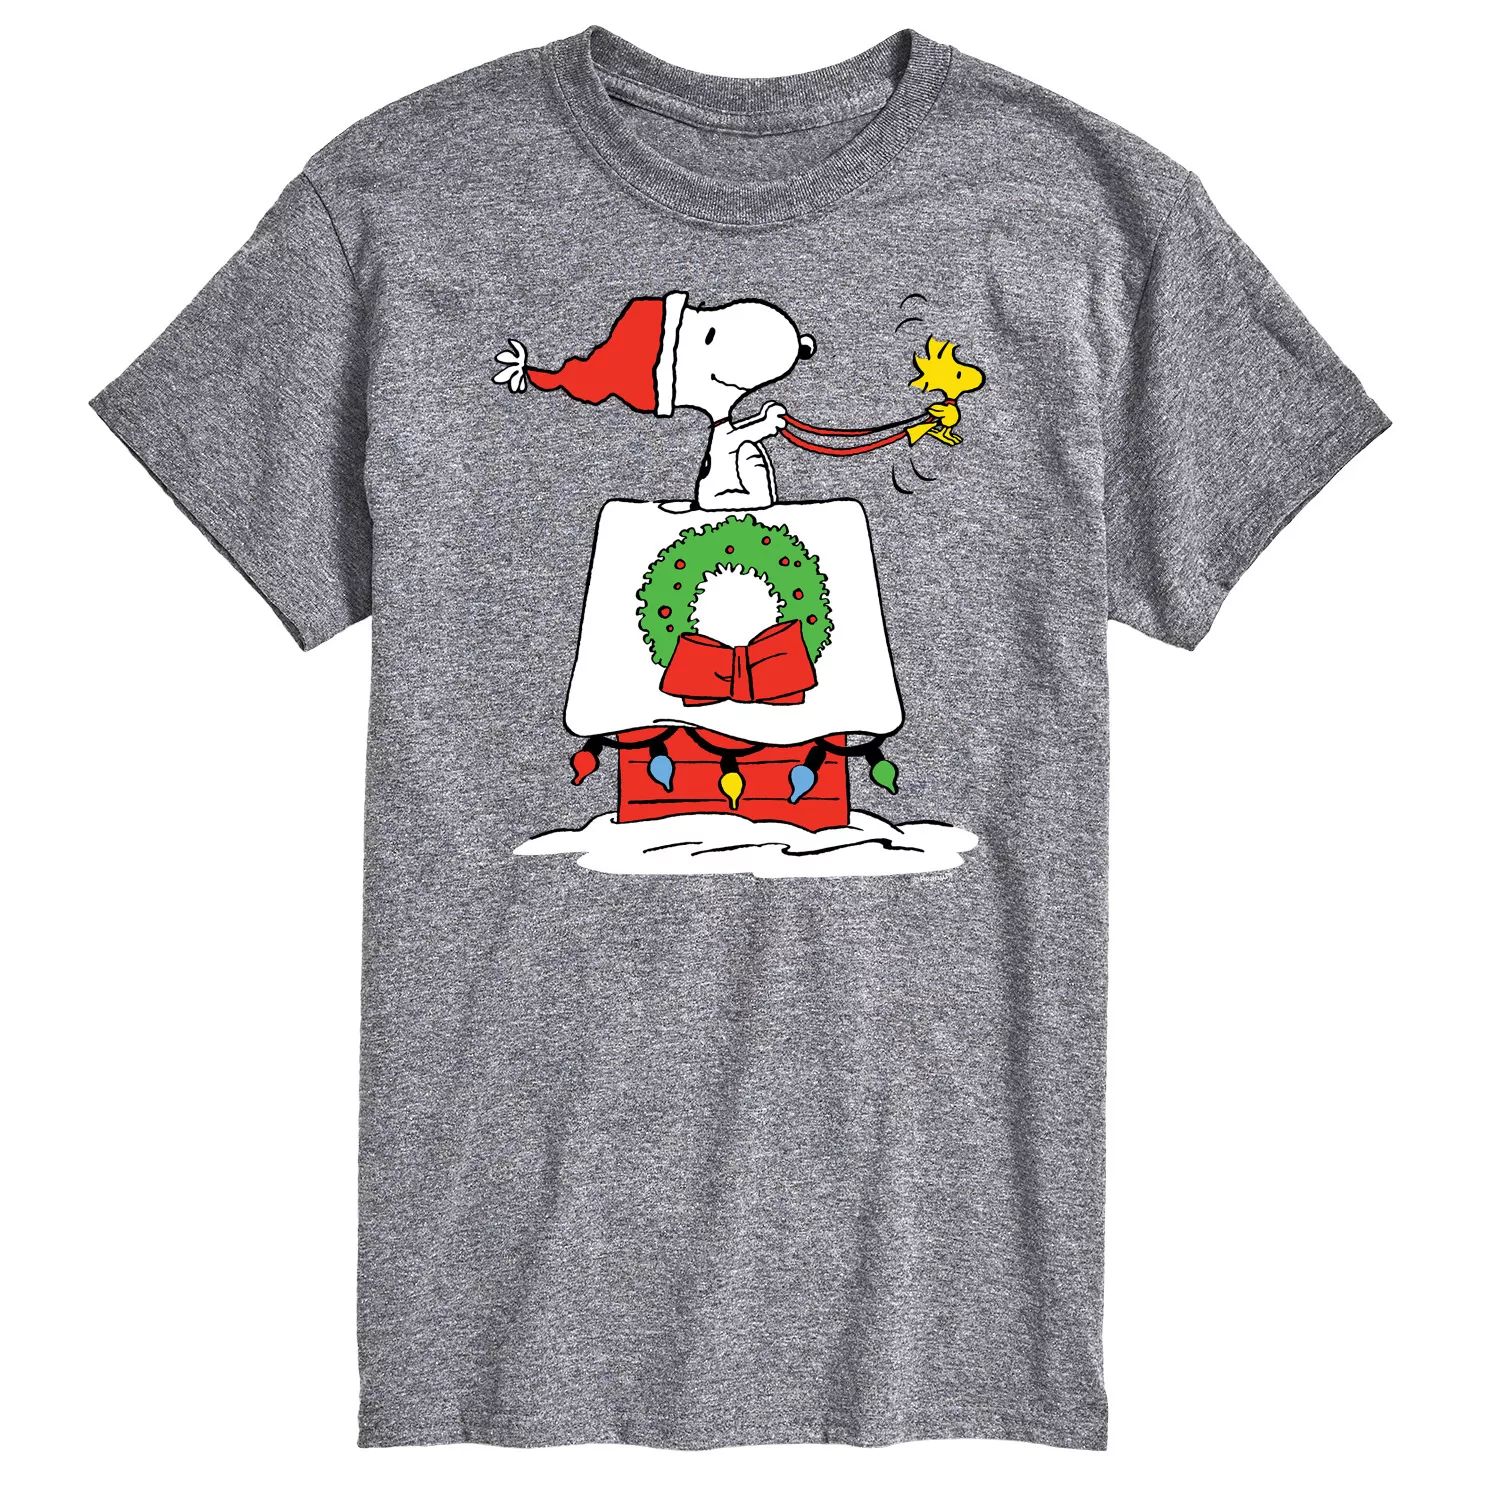 мужская футболка polar express santas sleigh licensed character Мужская футболка Peanuts House Sleigh Tee Licensed Character